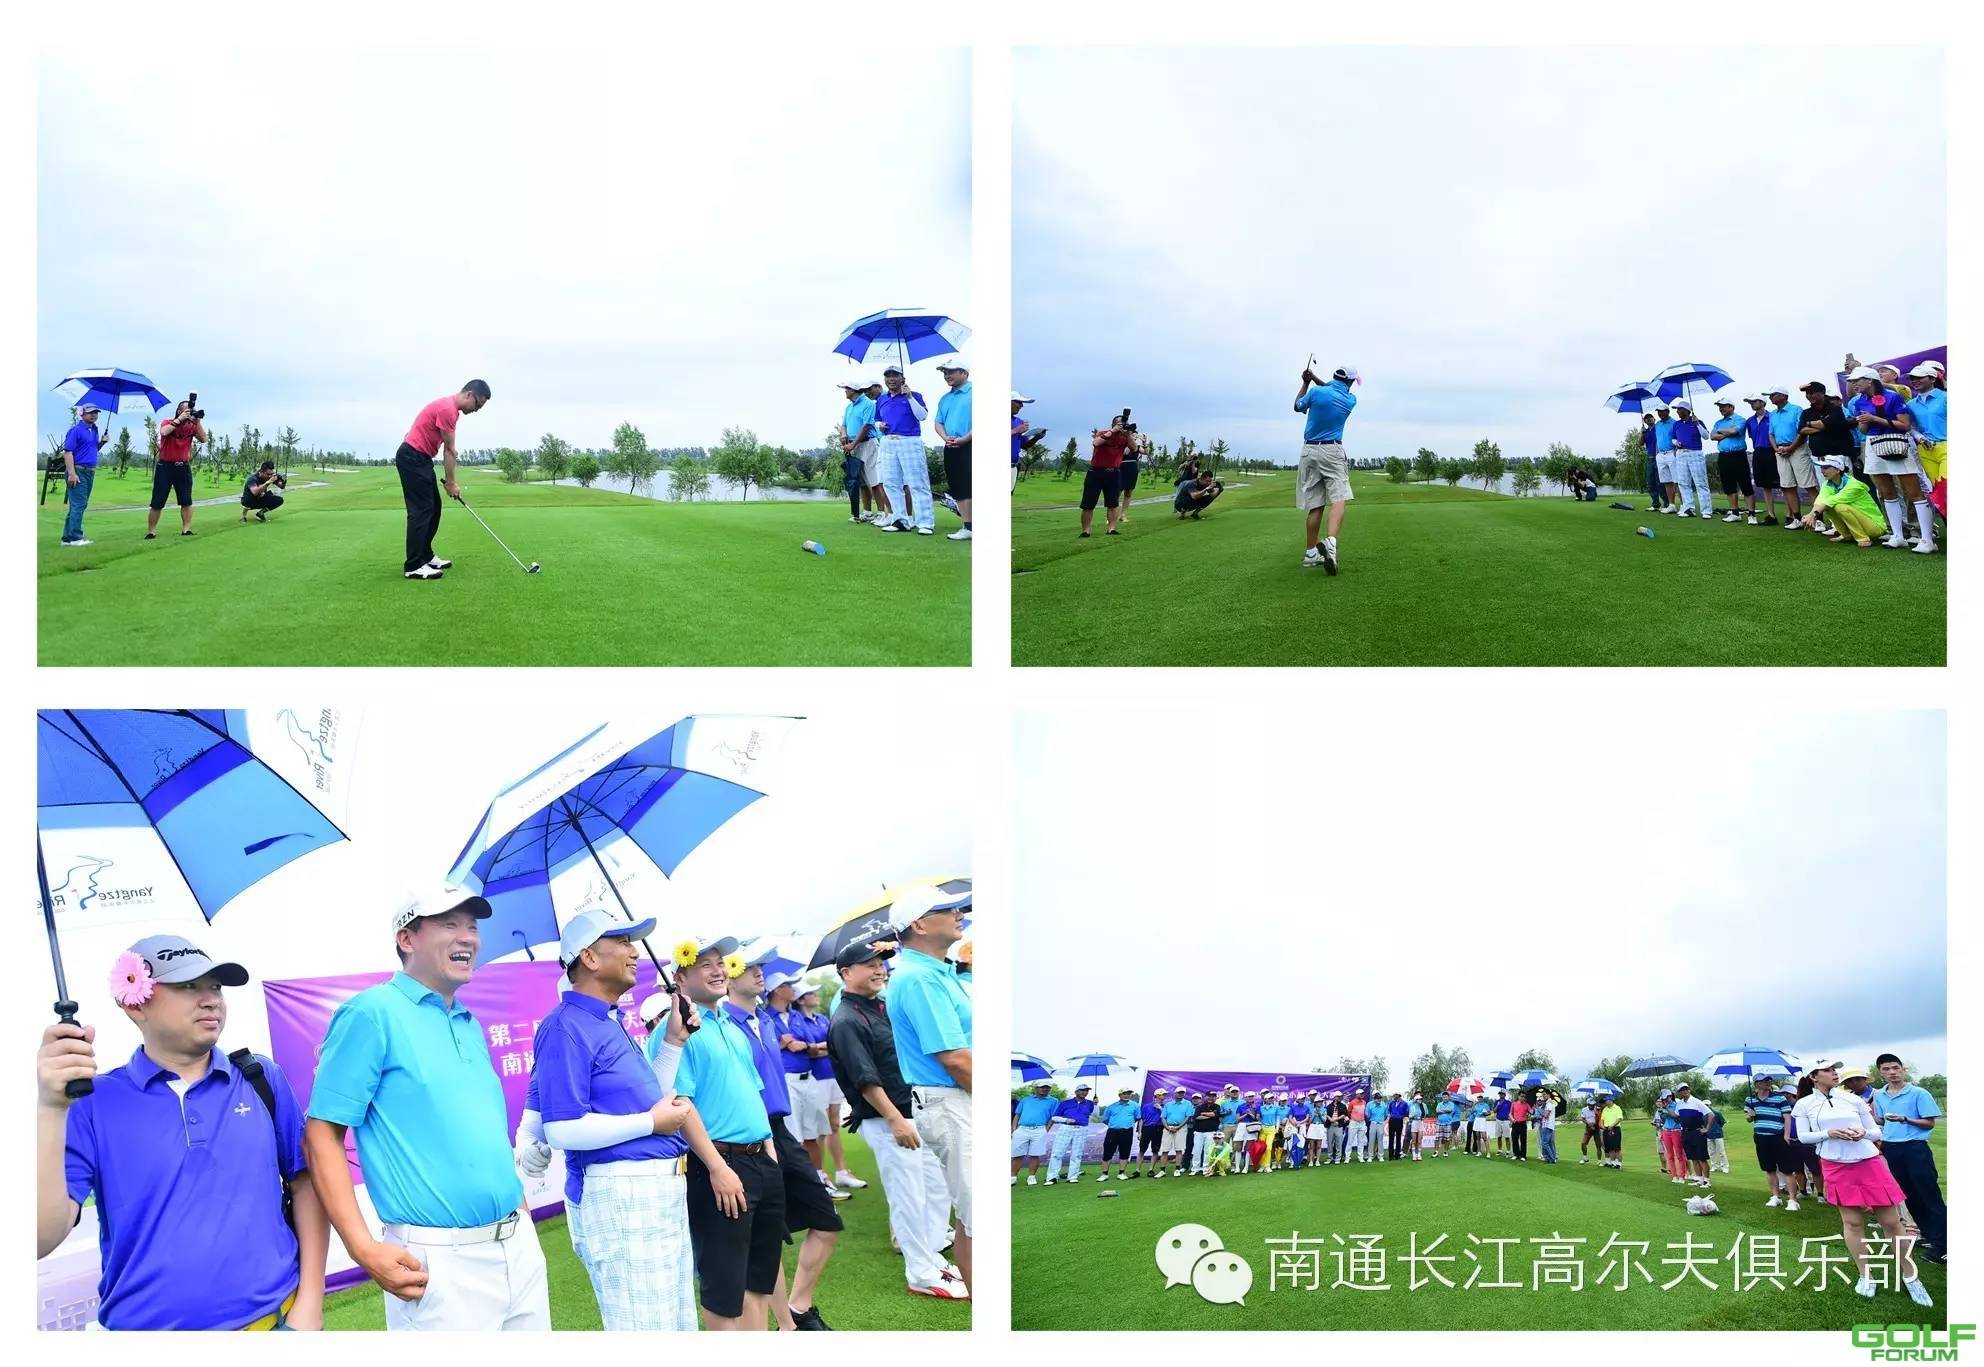 中国高尔夫小姐选美大赛南通长江分站赛精彩第二章